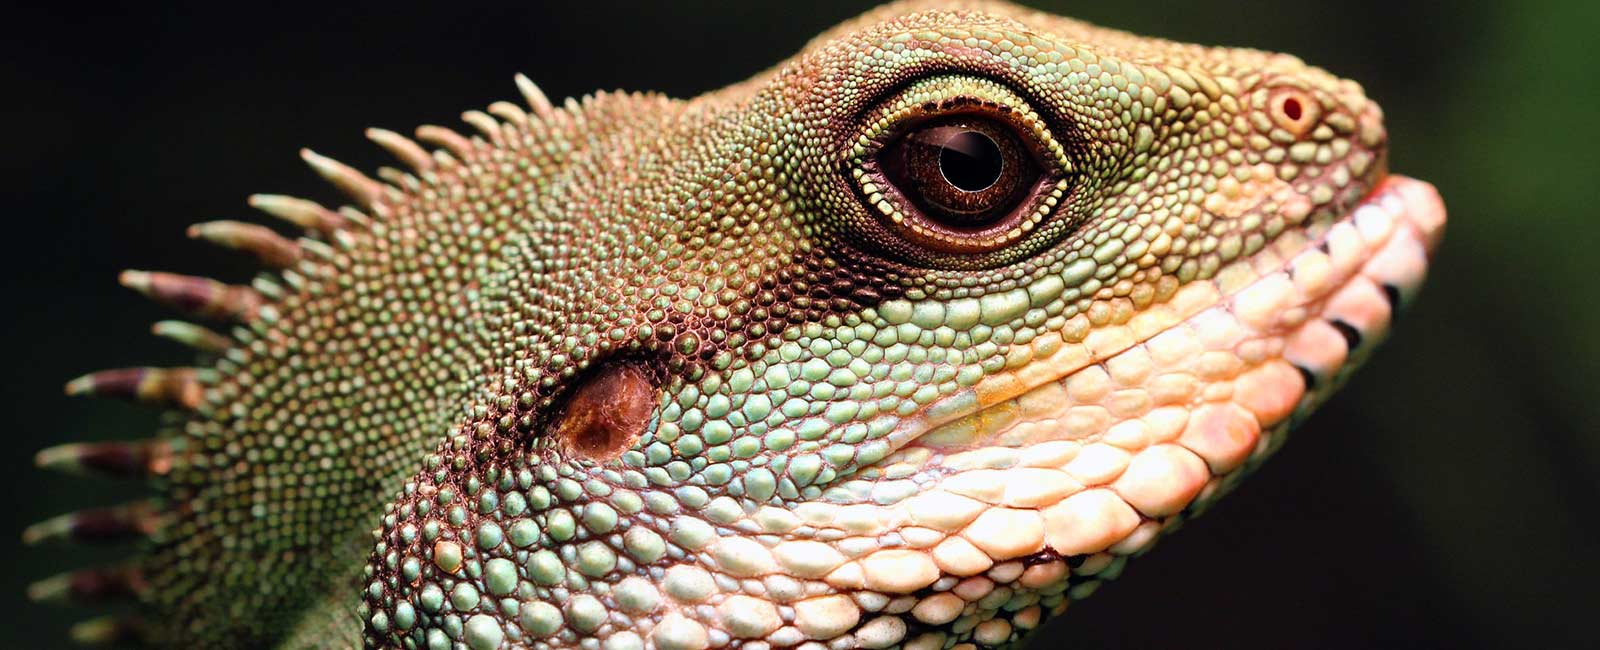 Grausamer Reptilienhandel: So schlecht geht es den Tieren